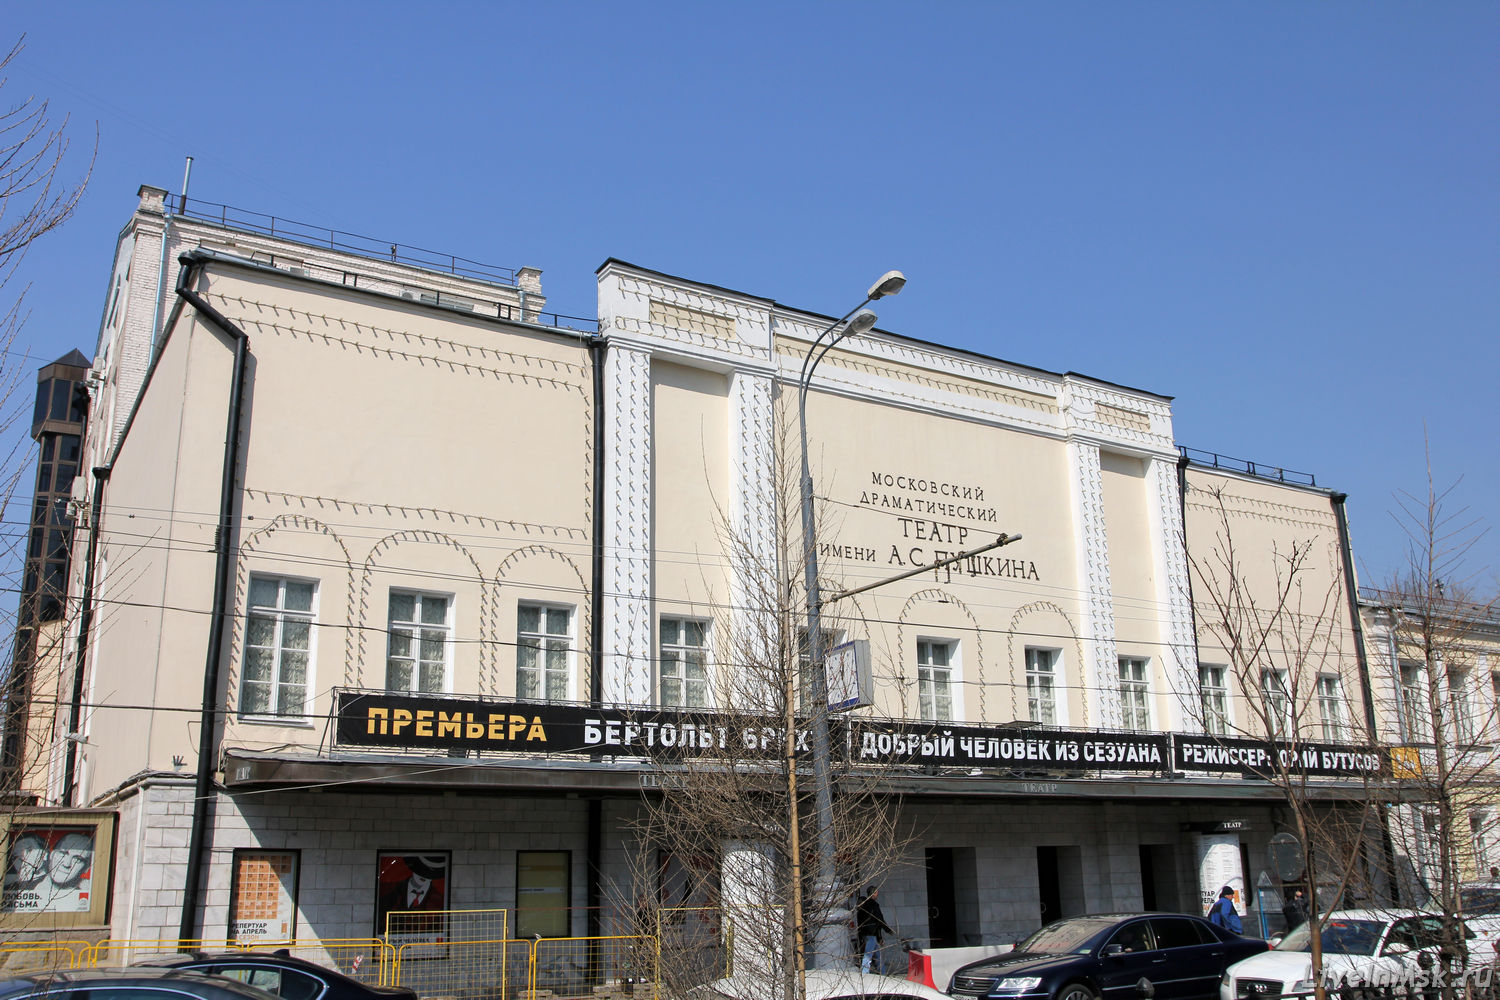 Театр имени Пушкина, фото 2015 года